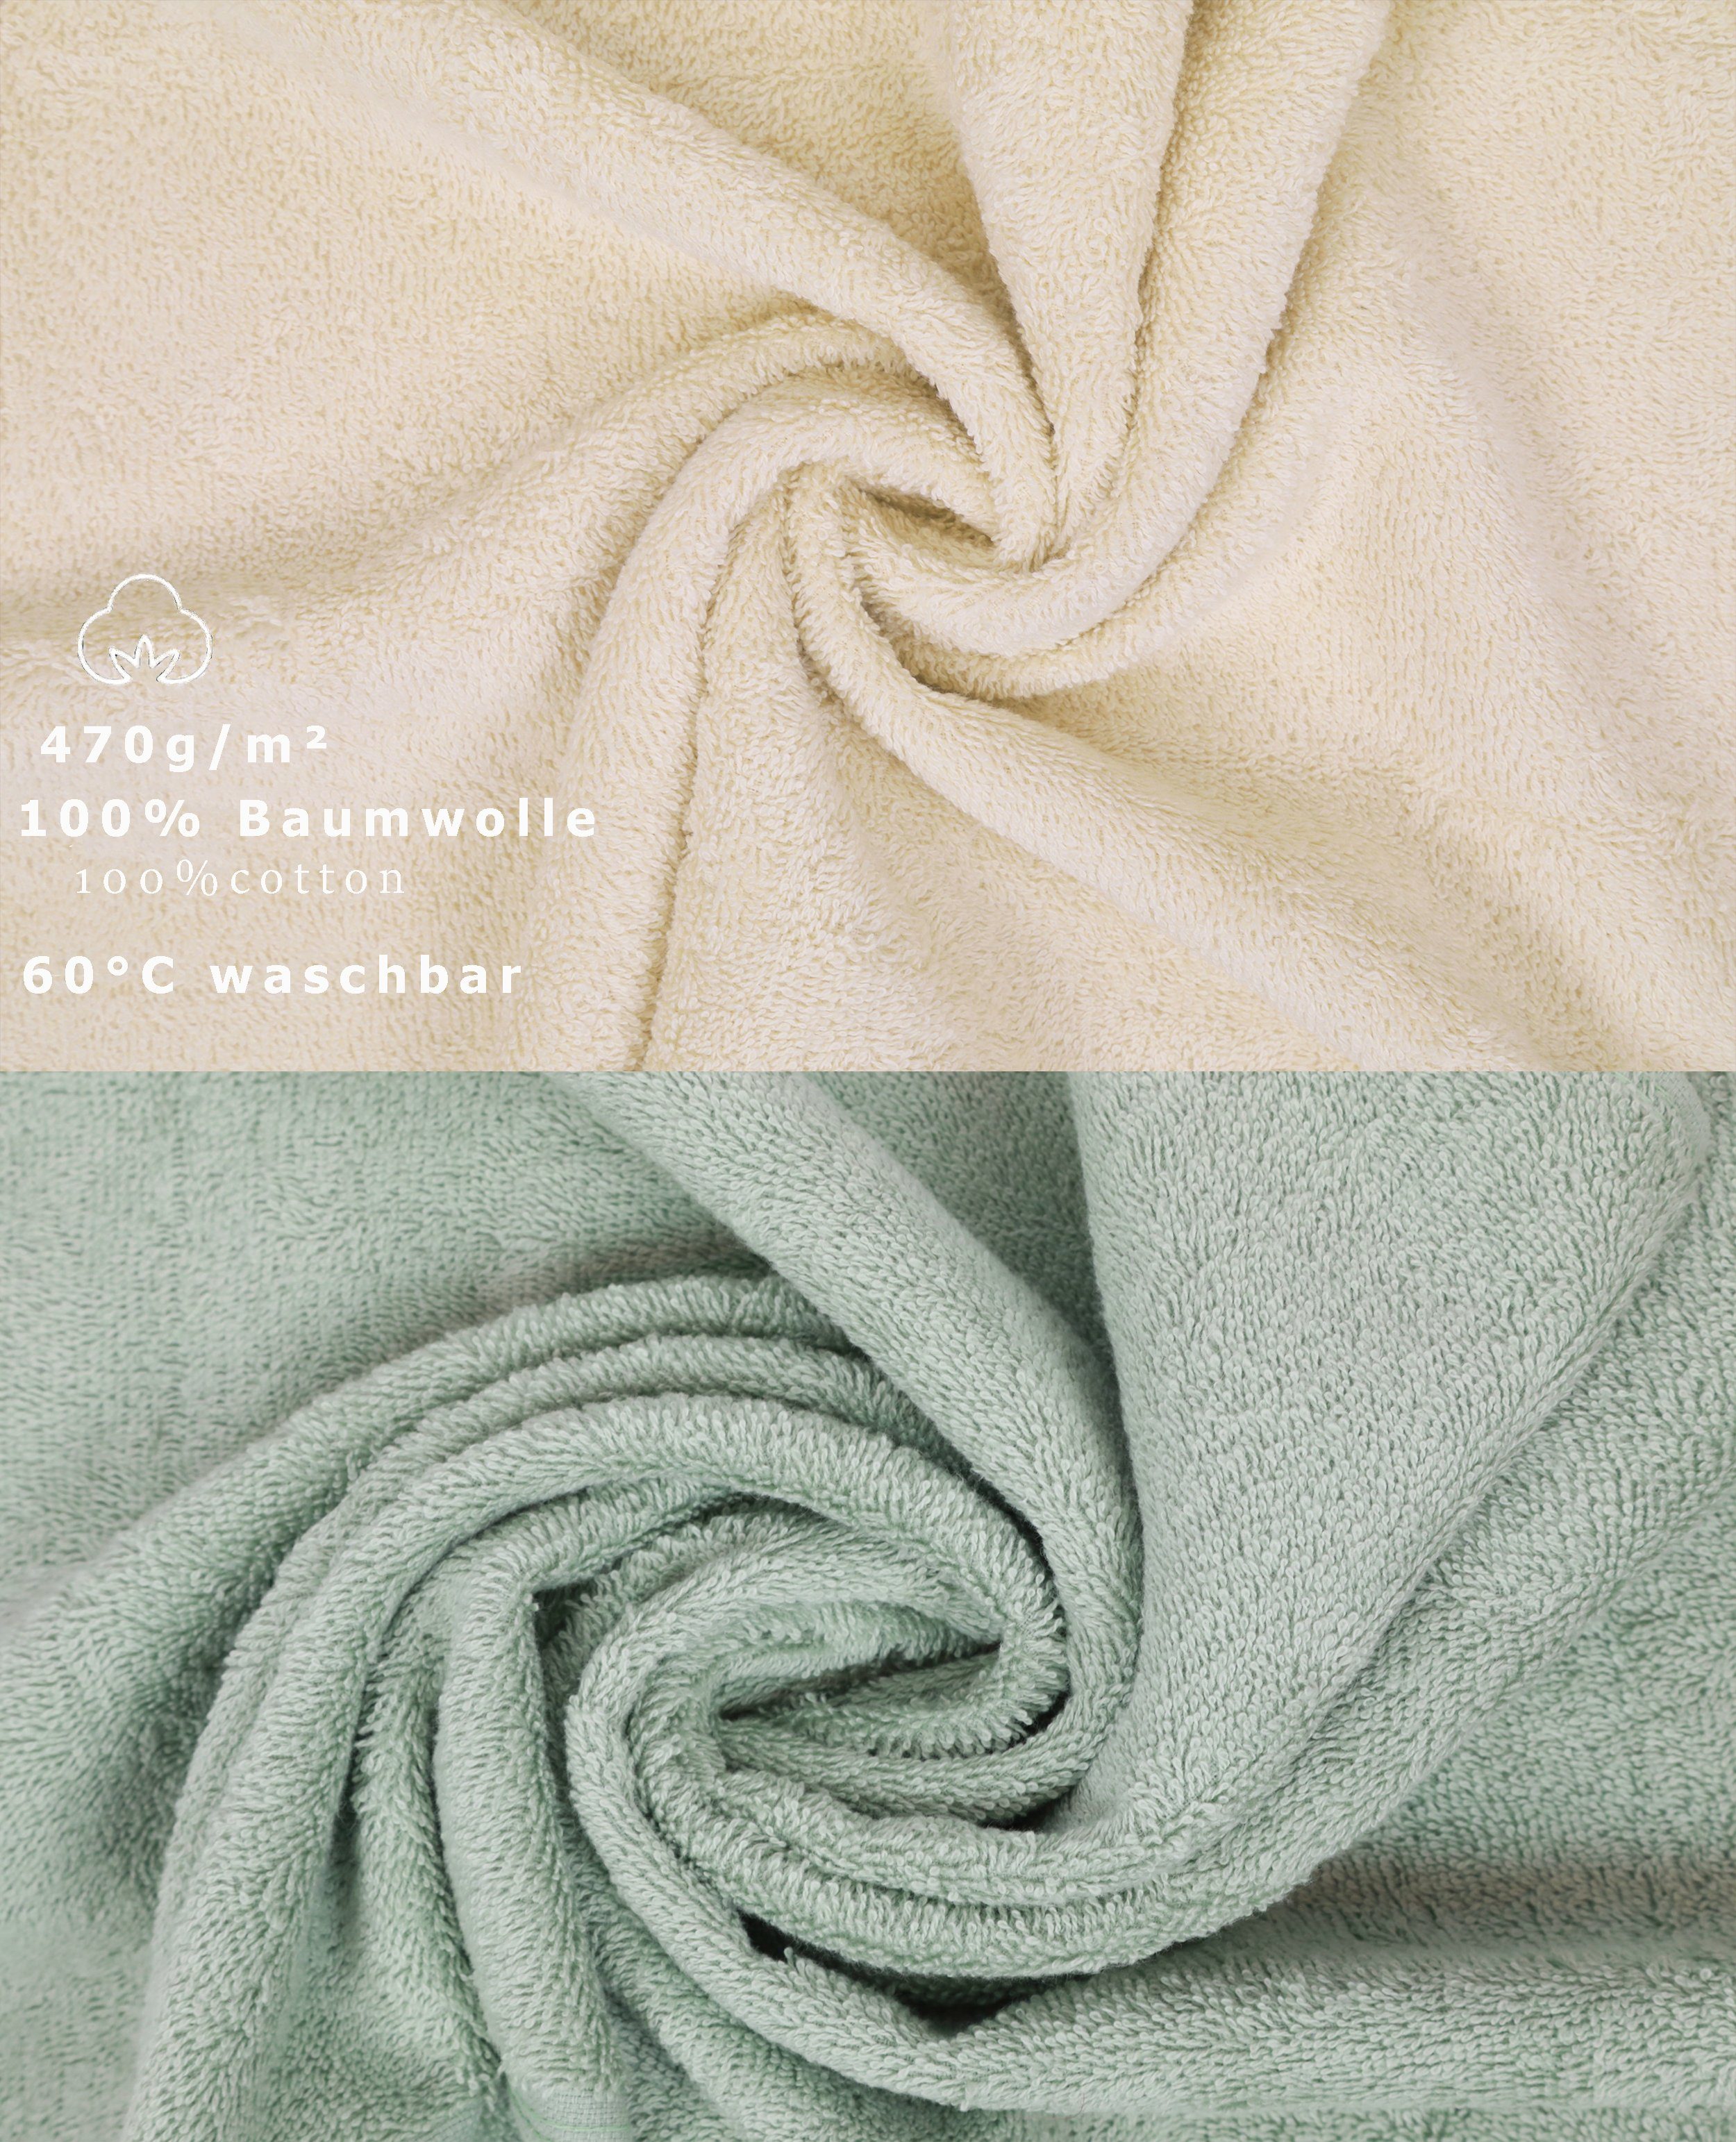 Betz Handtuch Set 12-tlg. Handtuch Baumwolle, 100% Premium Farbe Set Sand/heugrün, (12-tlg)